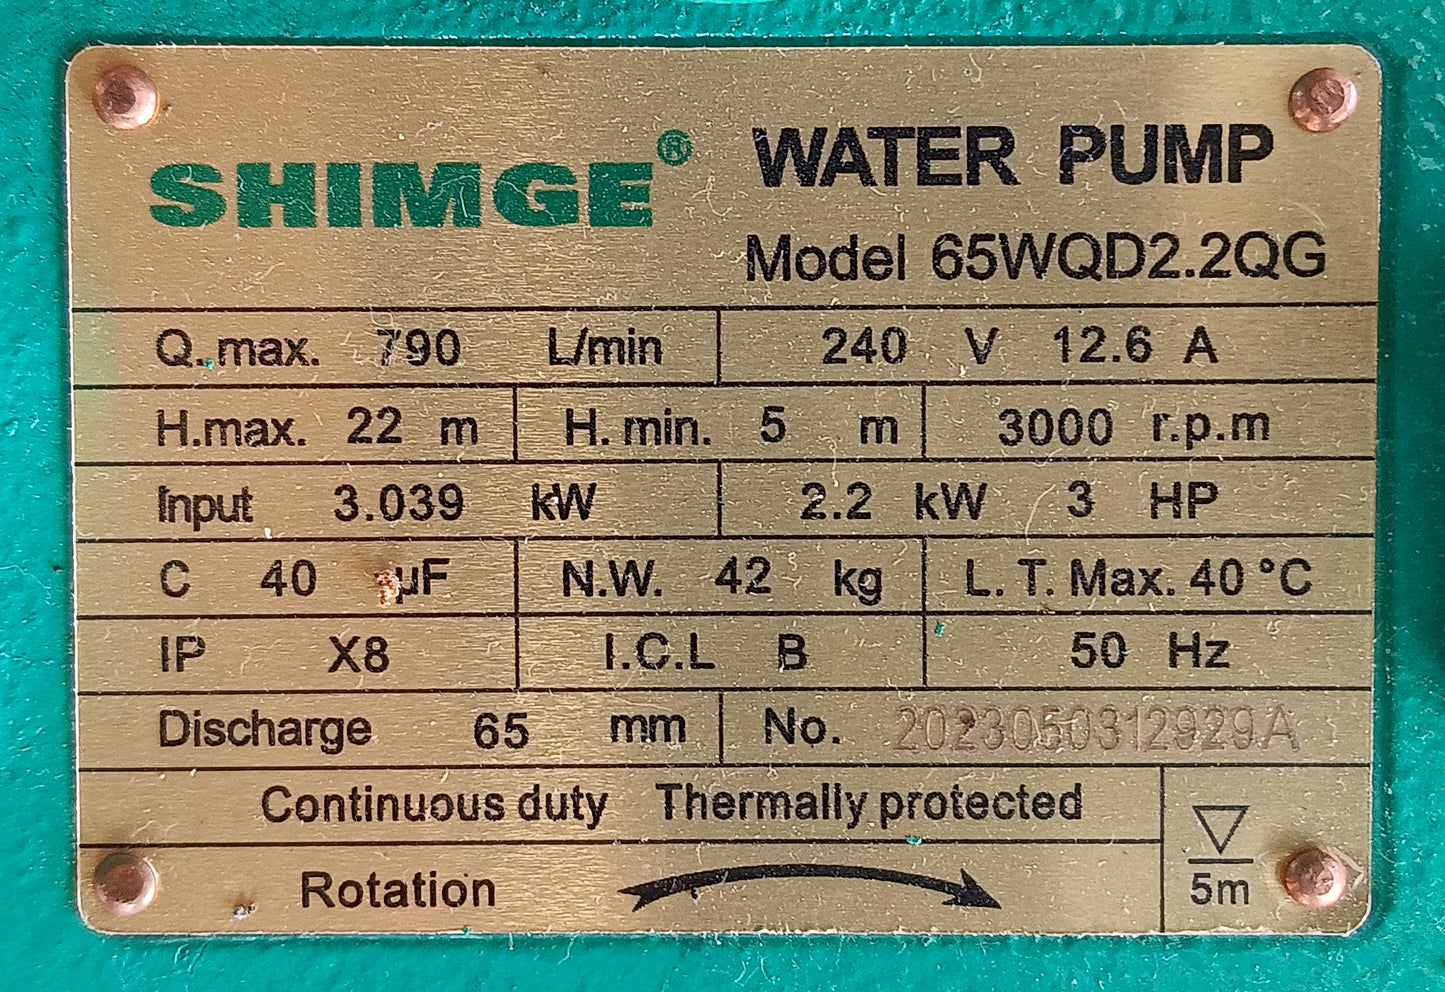 Submersible pump - 65WQD2.2QG